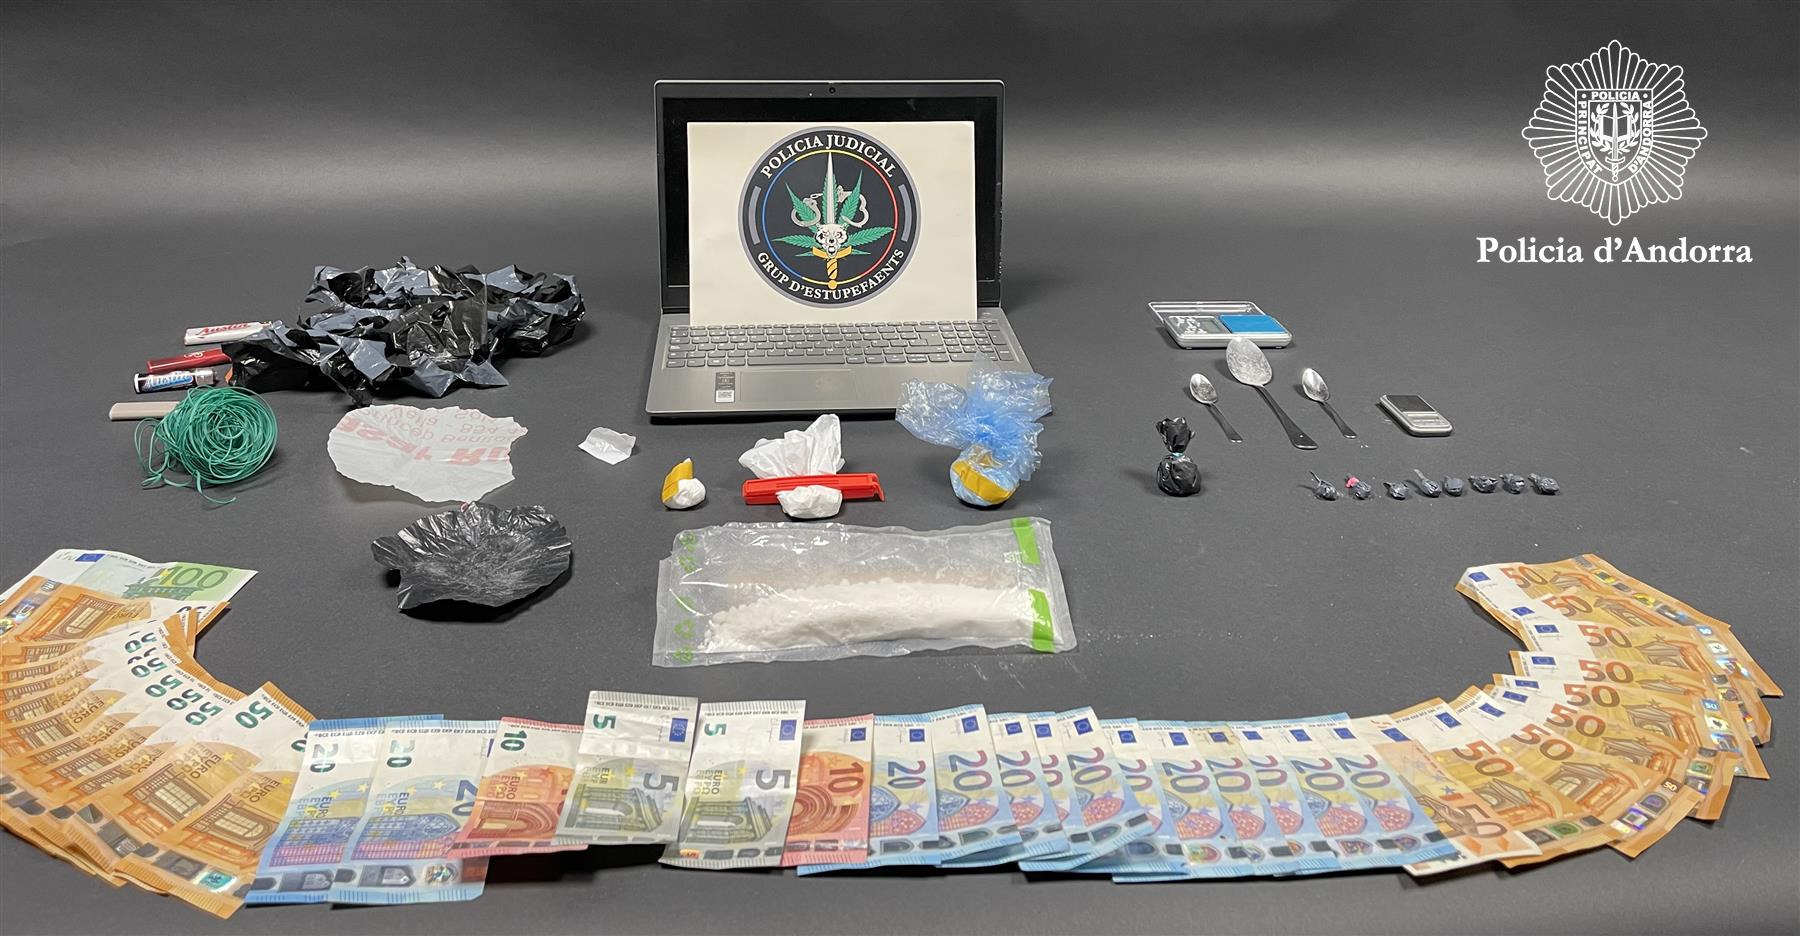 La Policia desmantella un important punt de venda de droga i comissa 170 grams de cocaïna en una operació amb quatre detinguts